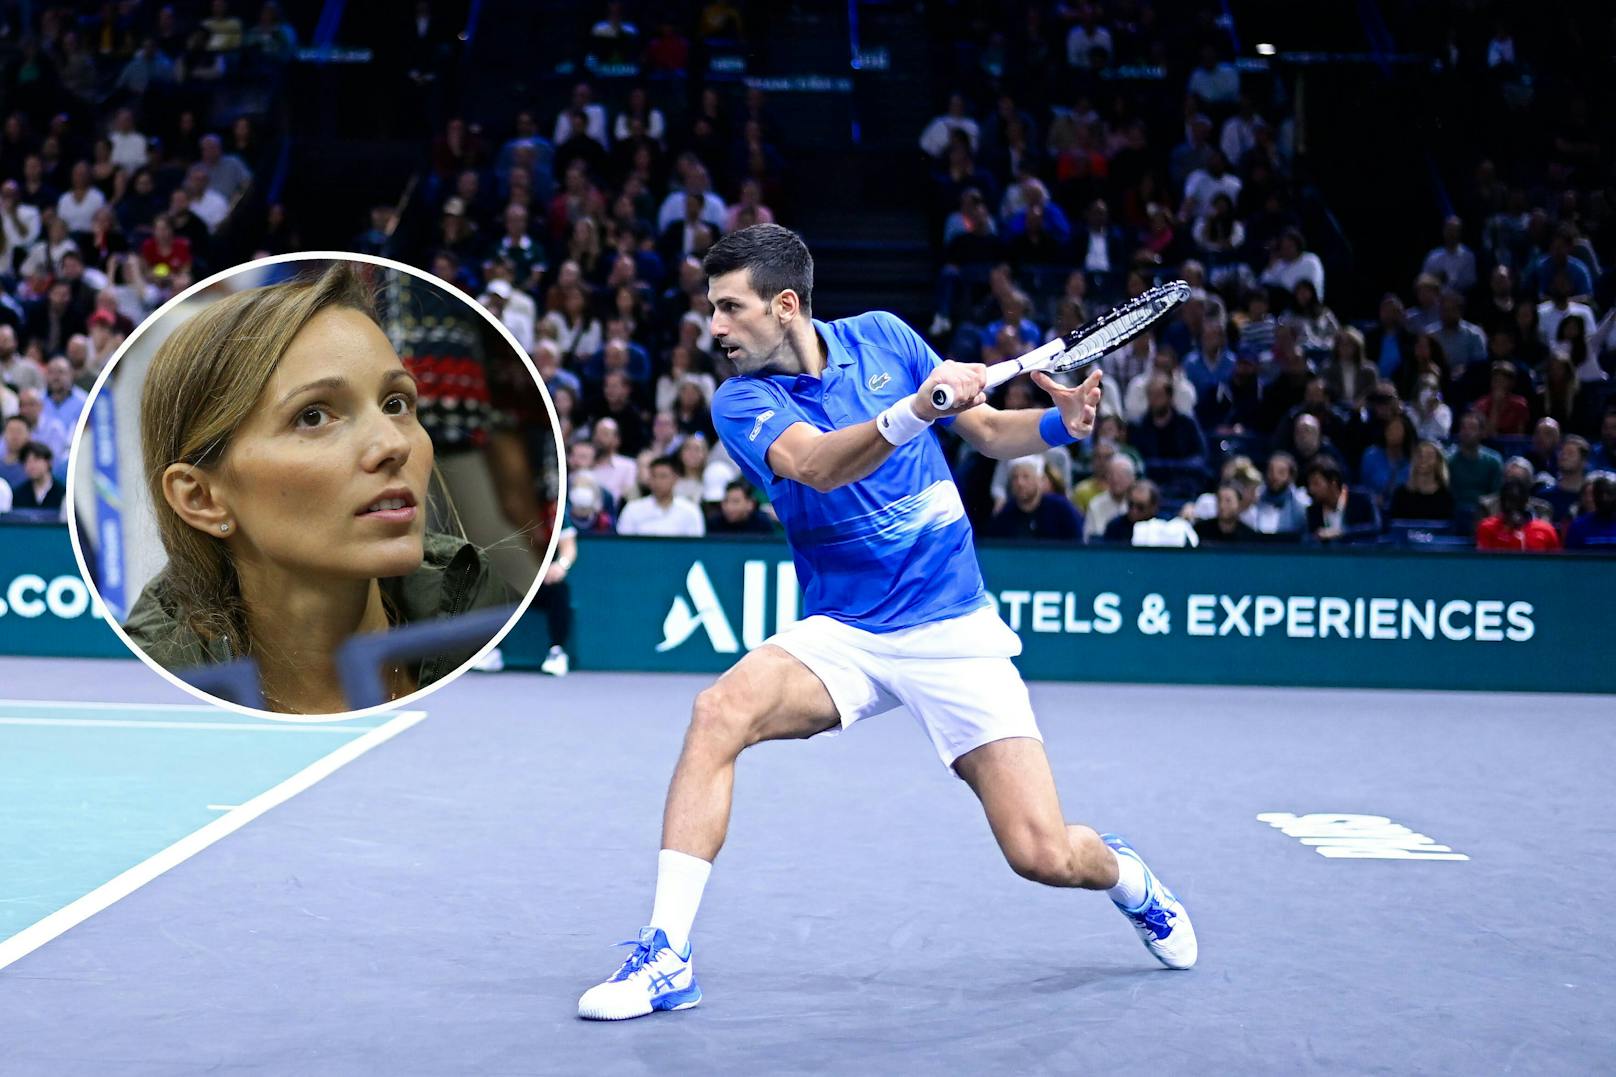 Jelena Djokovic schießt nach Dopingvorwürfen scharf gegen die Kritiker.